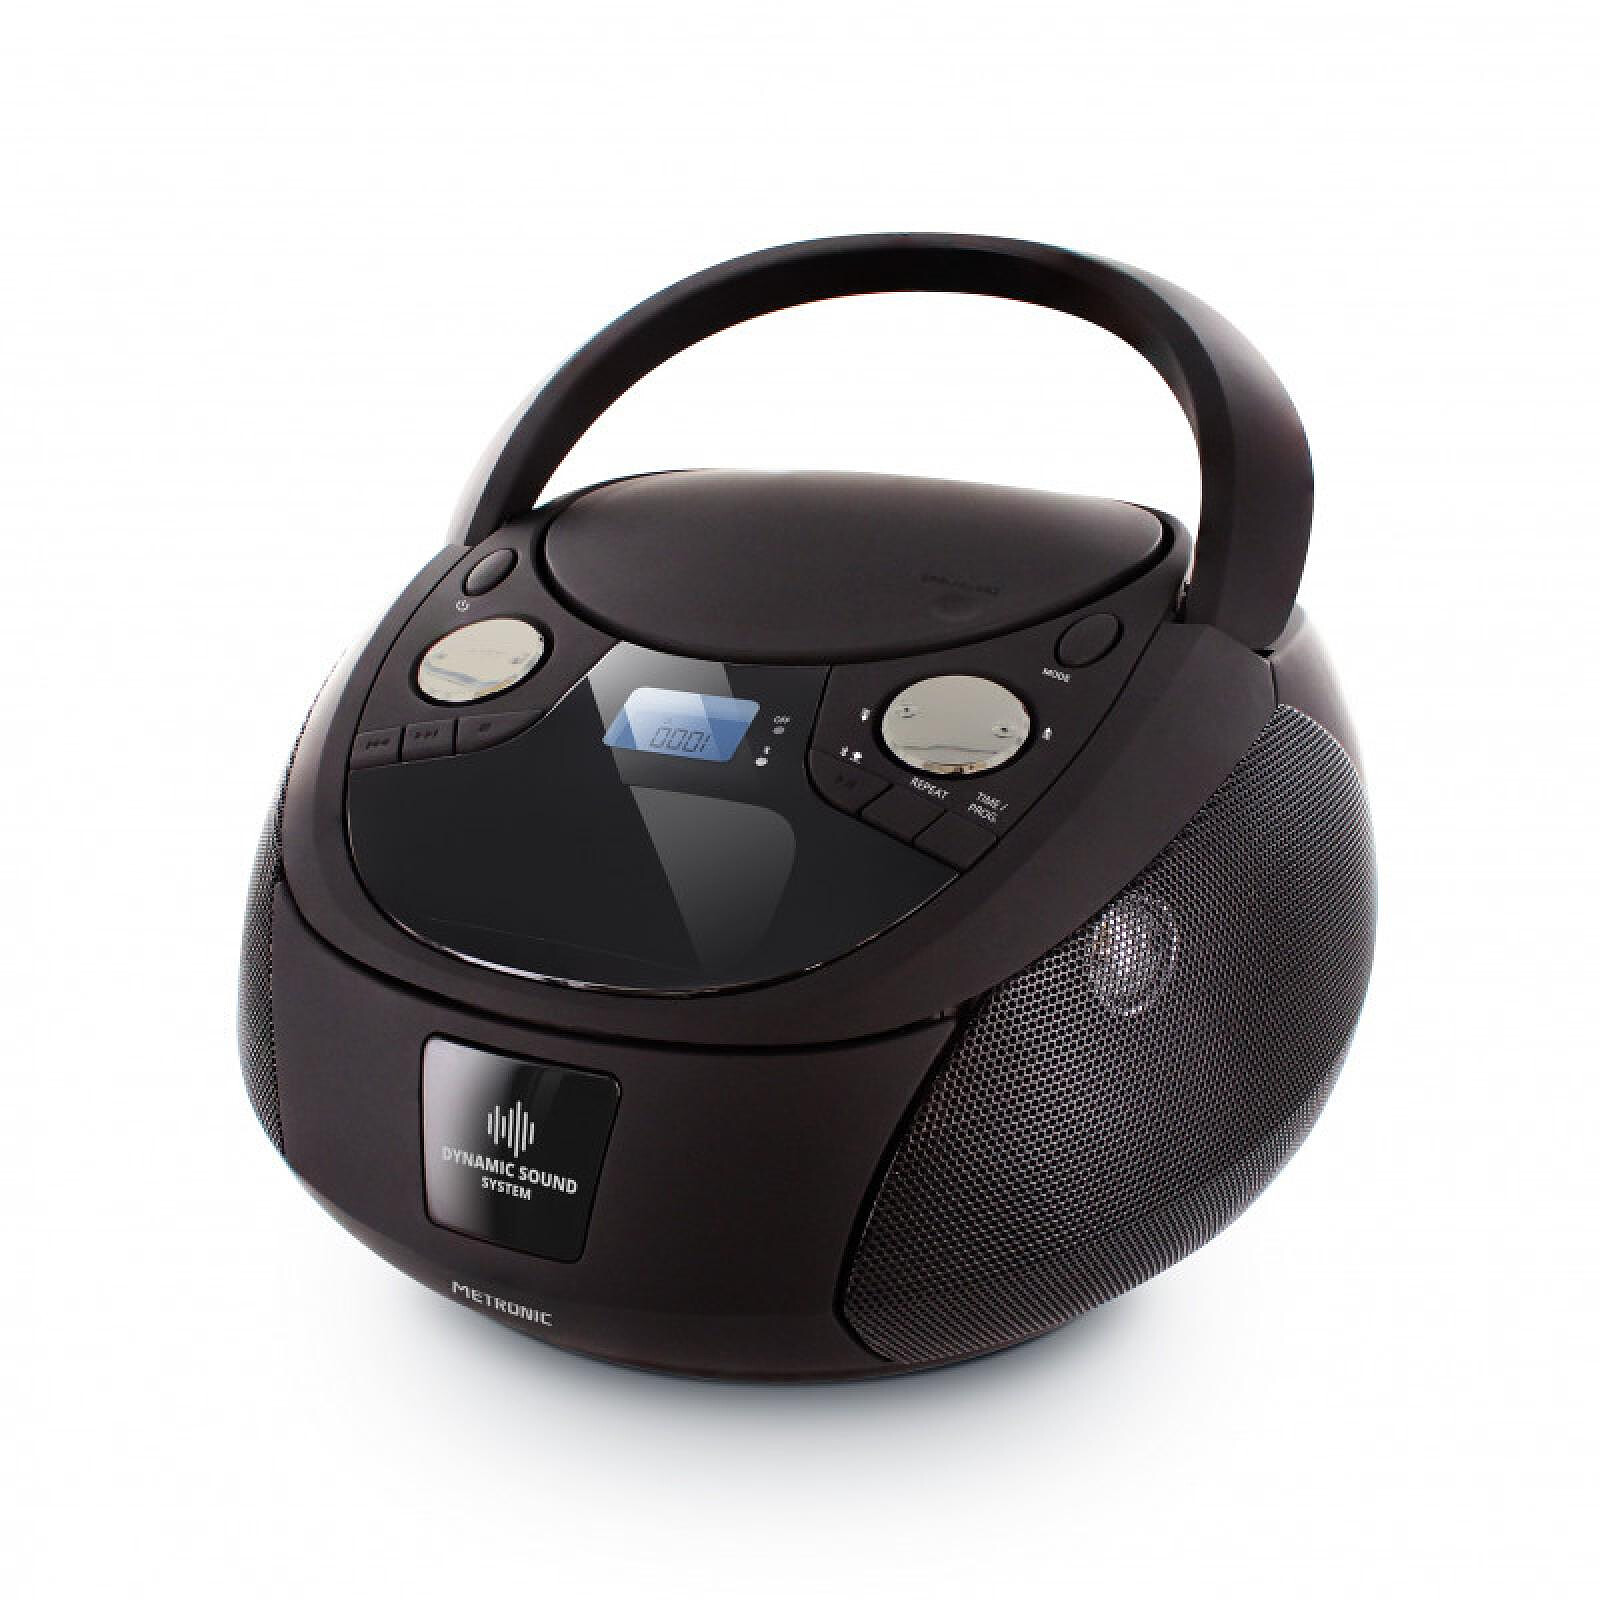 Metronic 477408 - Lecteur CD MP3 enfant avec port USB - rose clair